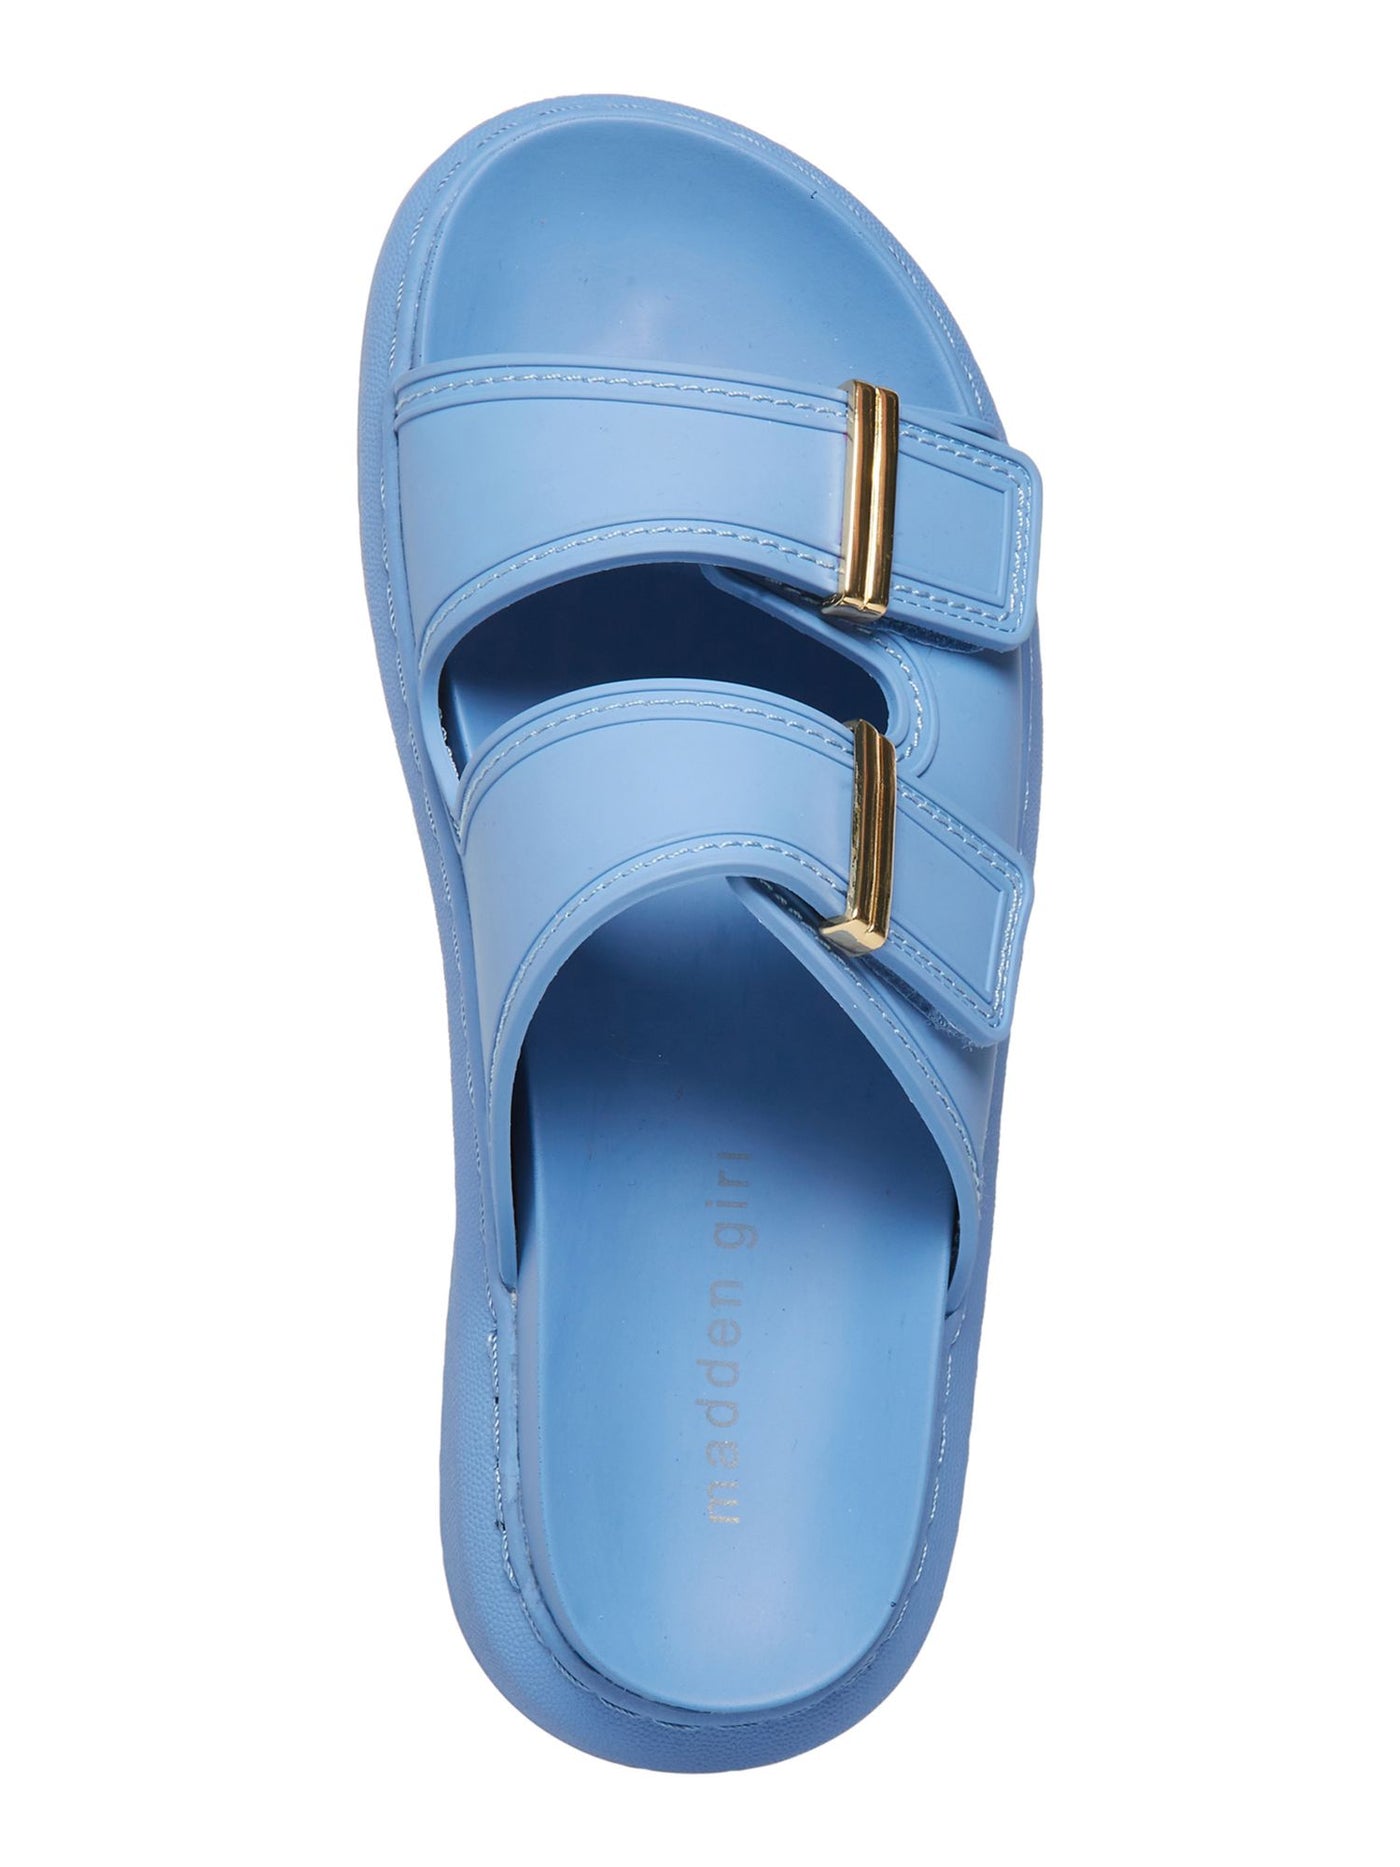 MADDEN GIRL Womens Blue Adjustable Strap Comfort Kingsley Round Toe Platform Slip On Slide Sandals Shoes 6 M